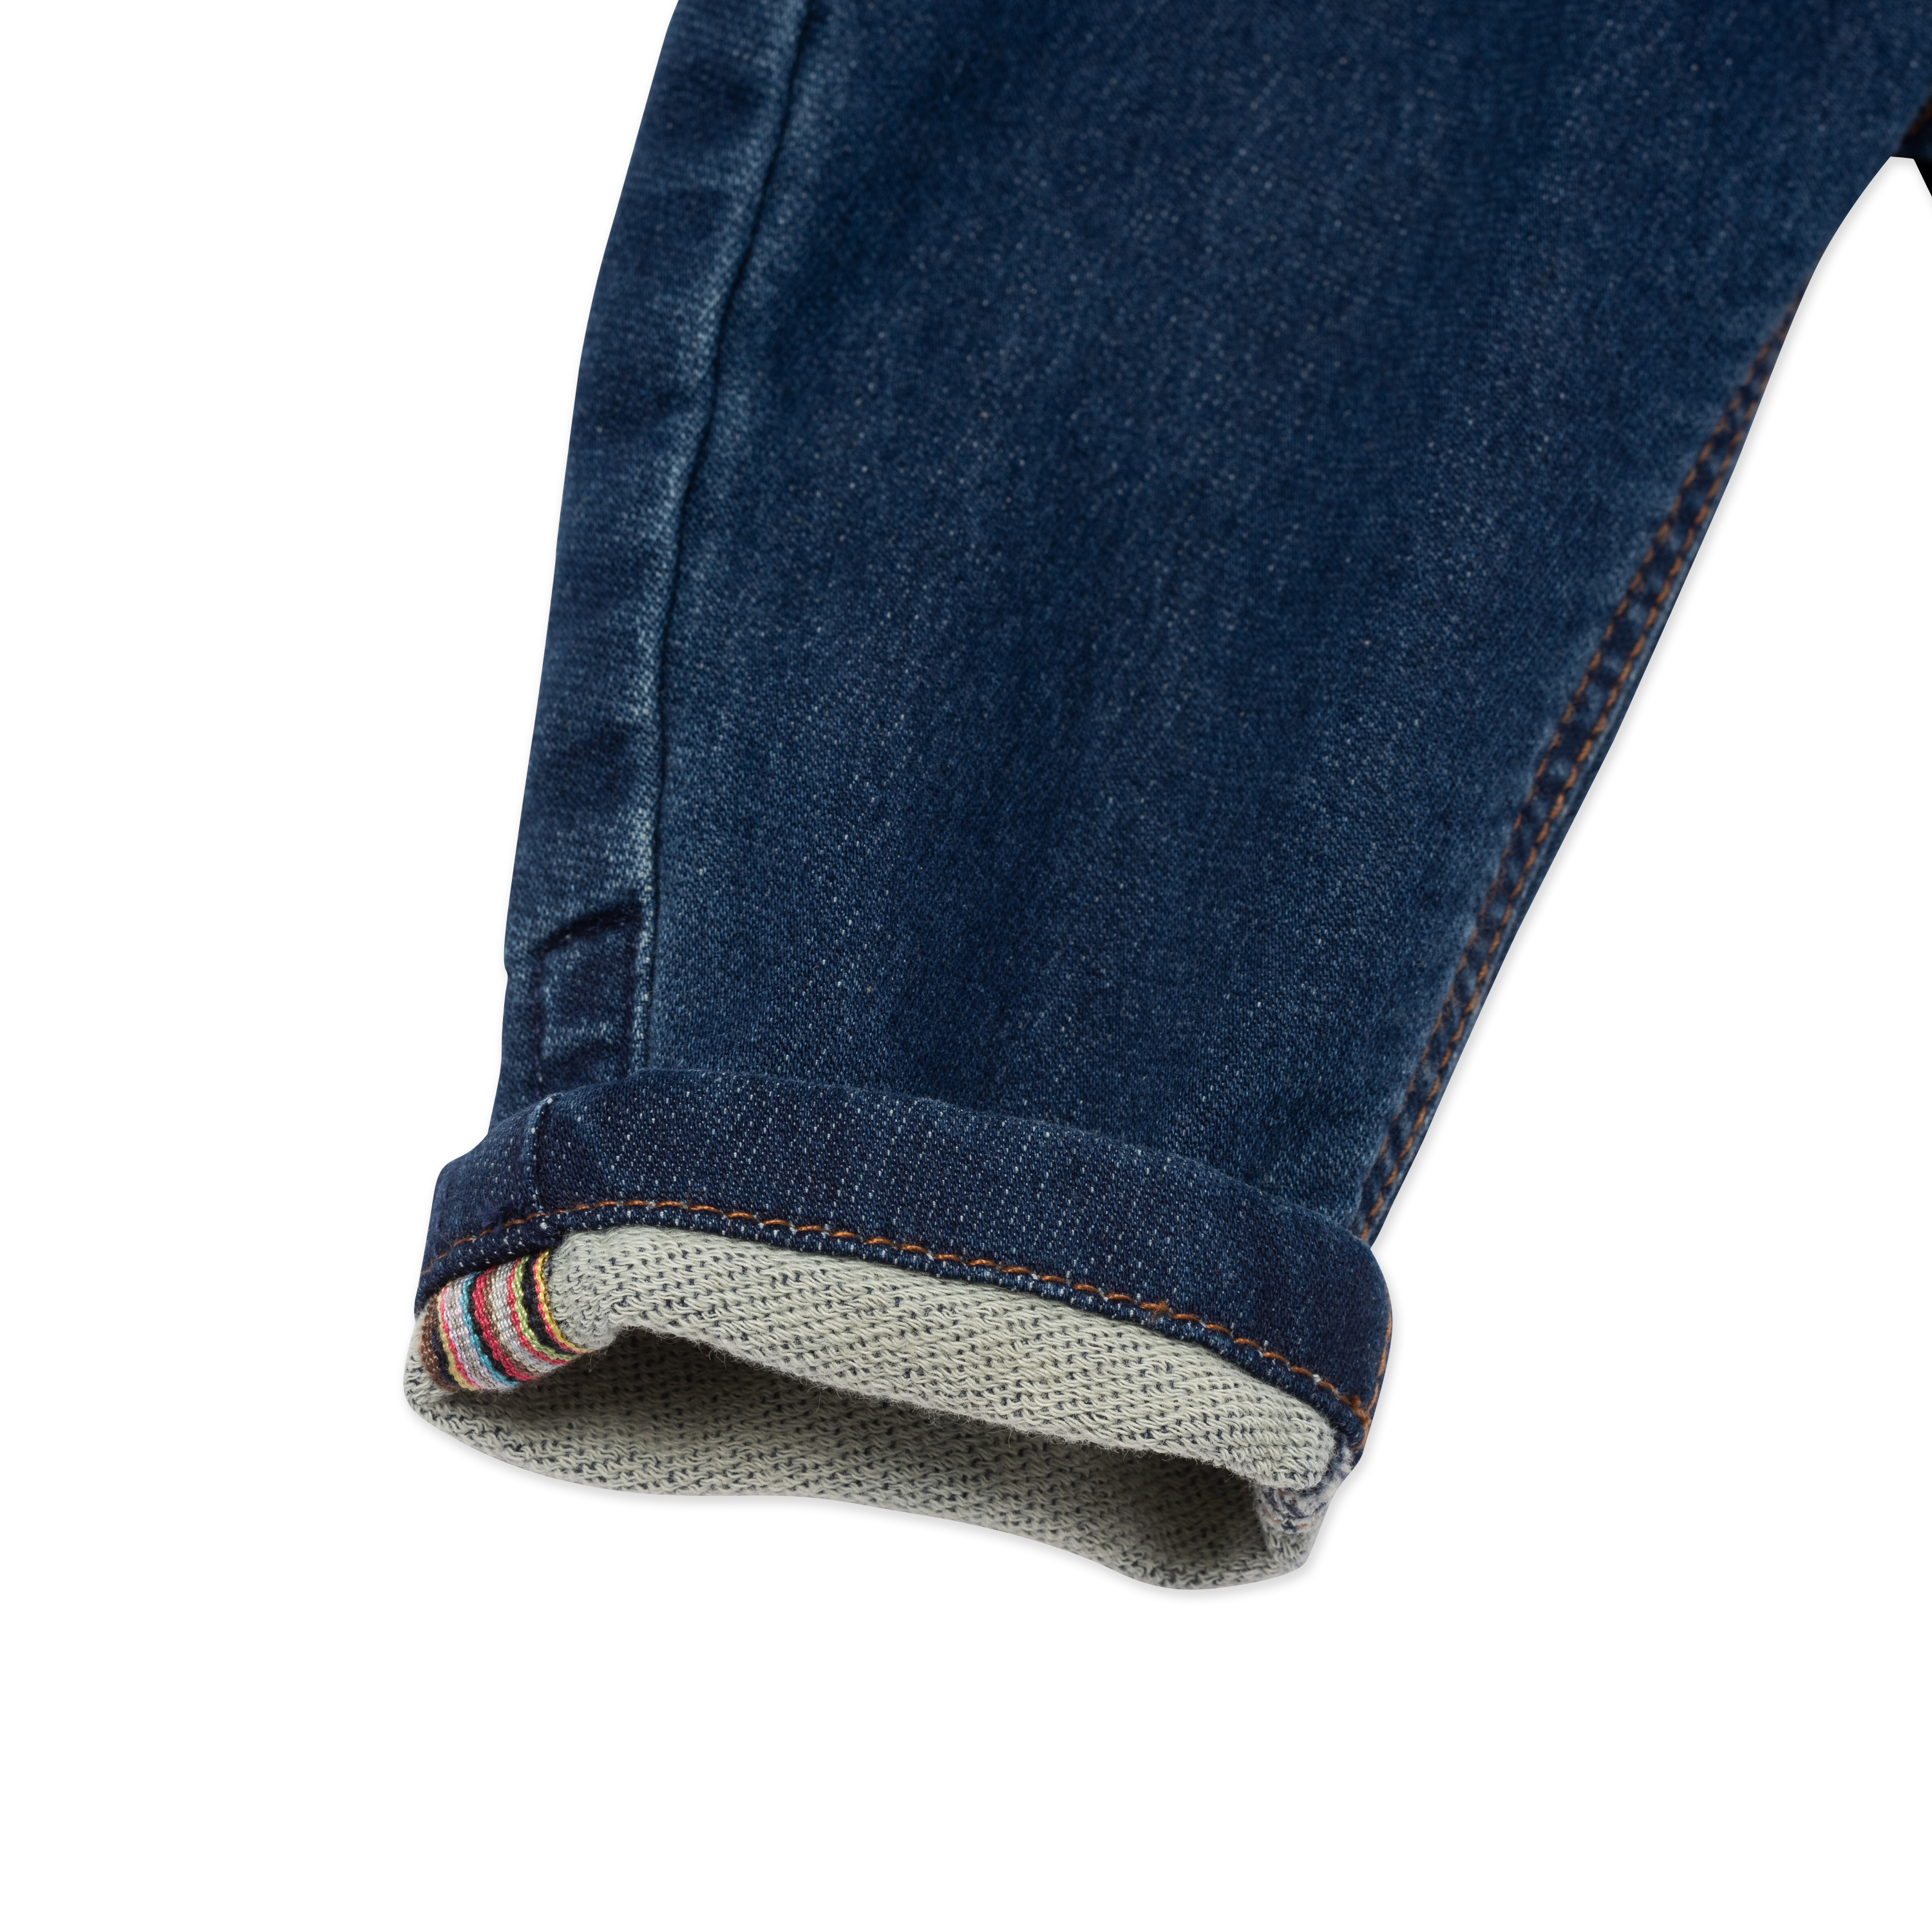 Jeans con vita elasticizzata PAUL SMITH JUNIOR Per RAGAZZO